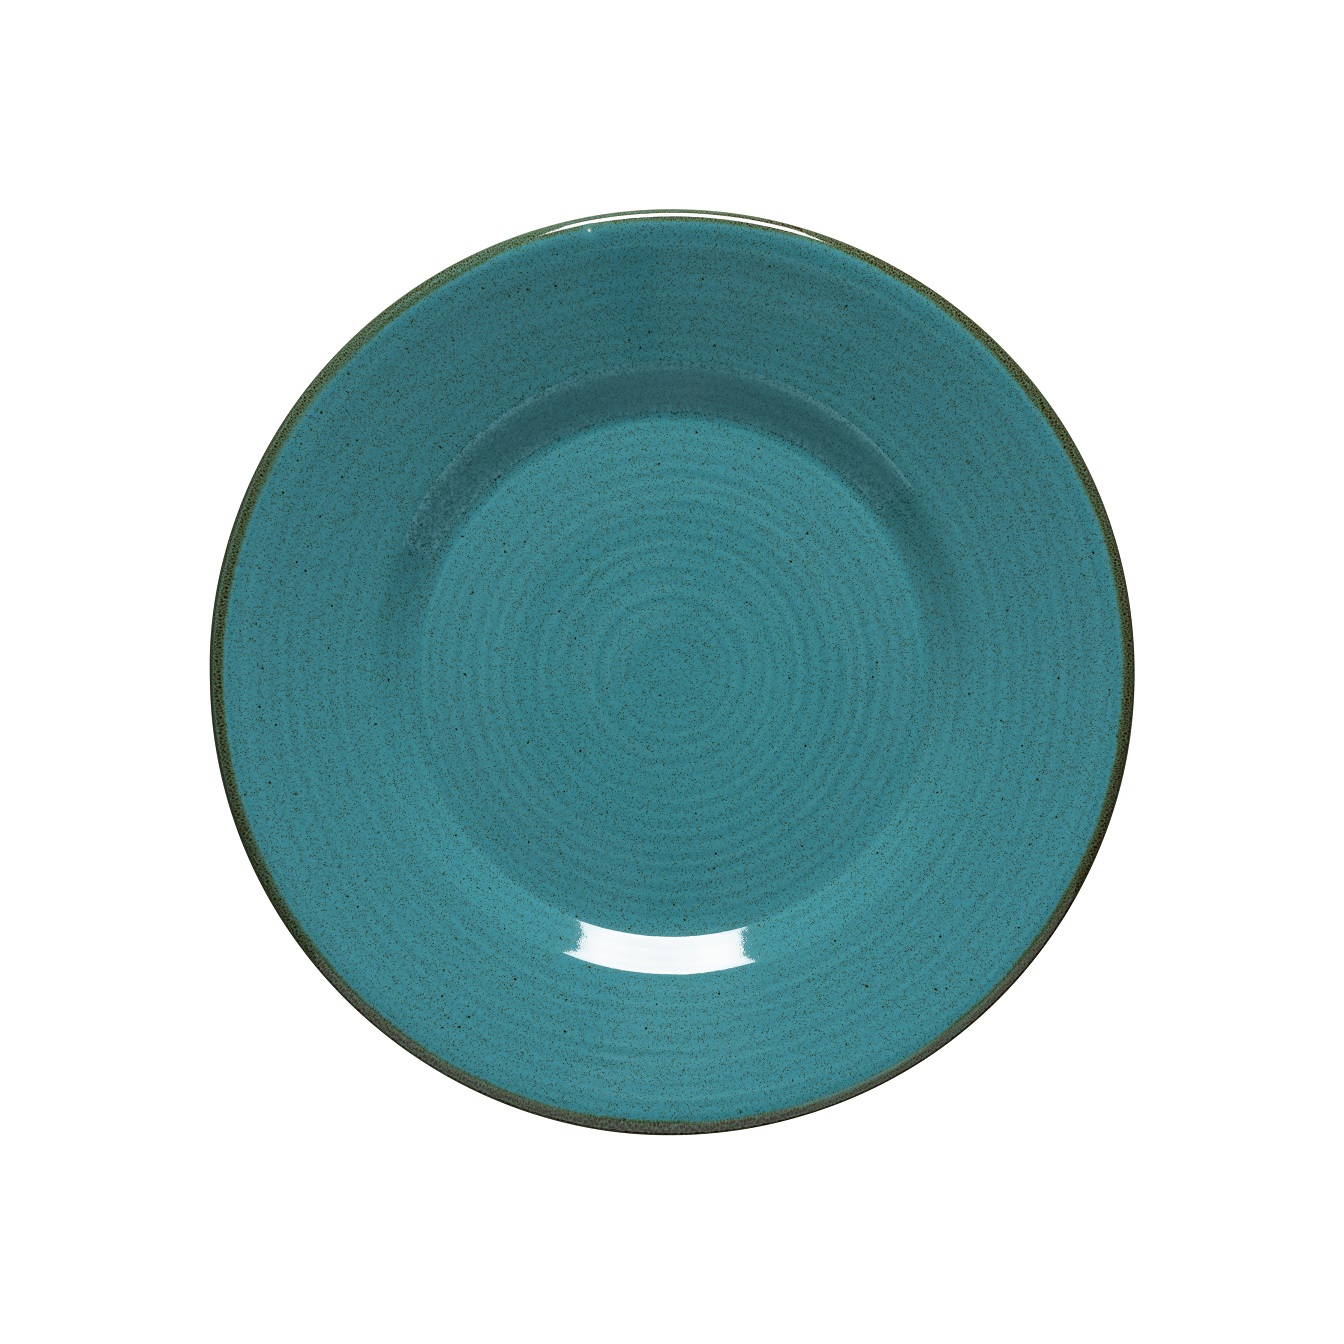 Sardegna Blue Dinner Plate 28cm Gift